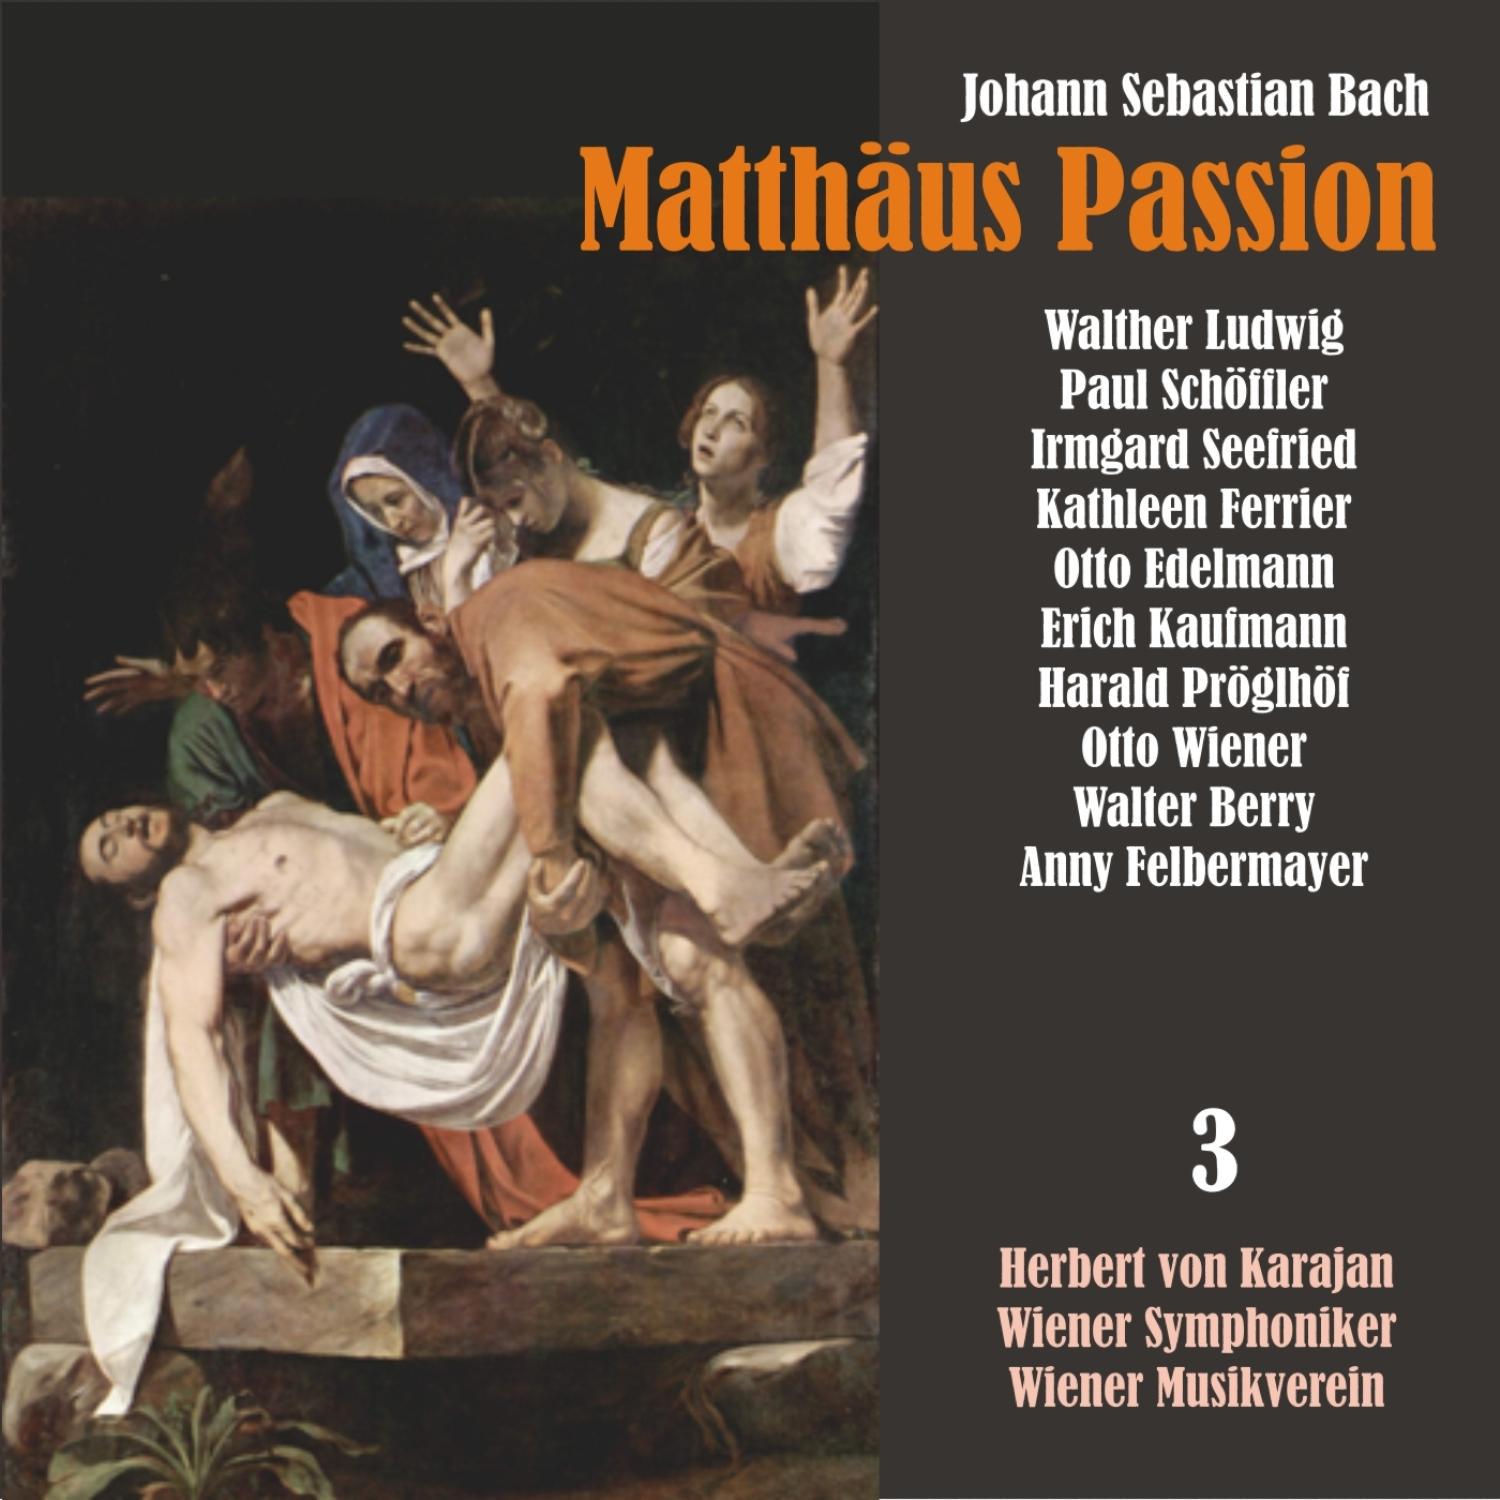 Matthäus Passion, BWV 244: "Mache dich, mein Here, rein"